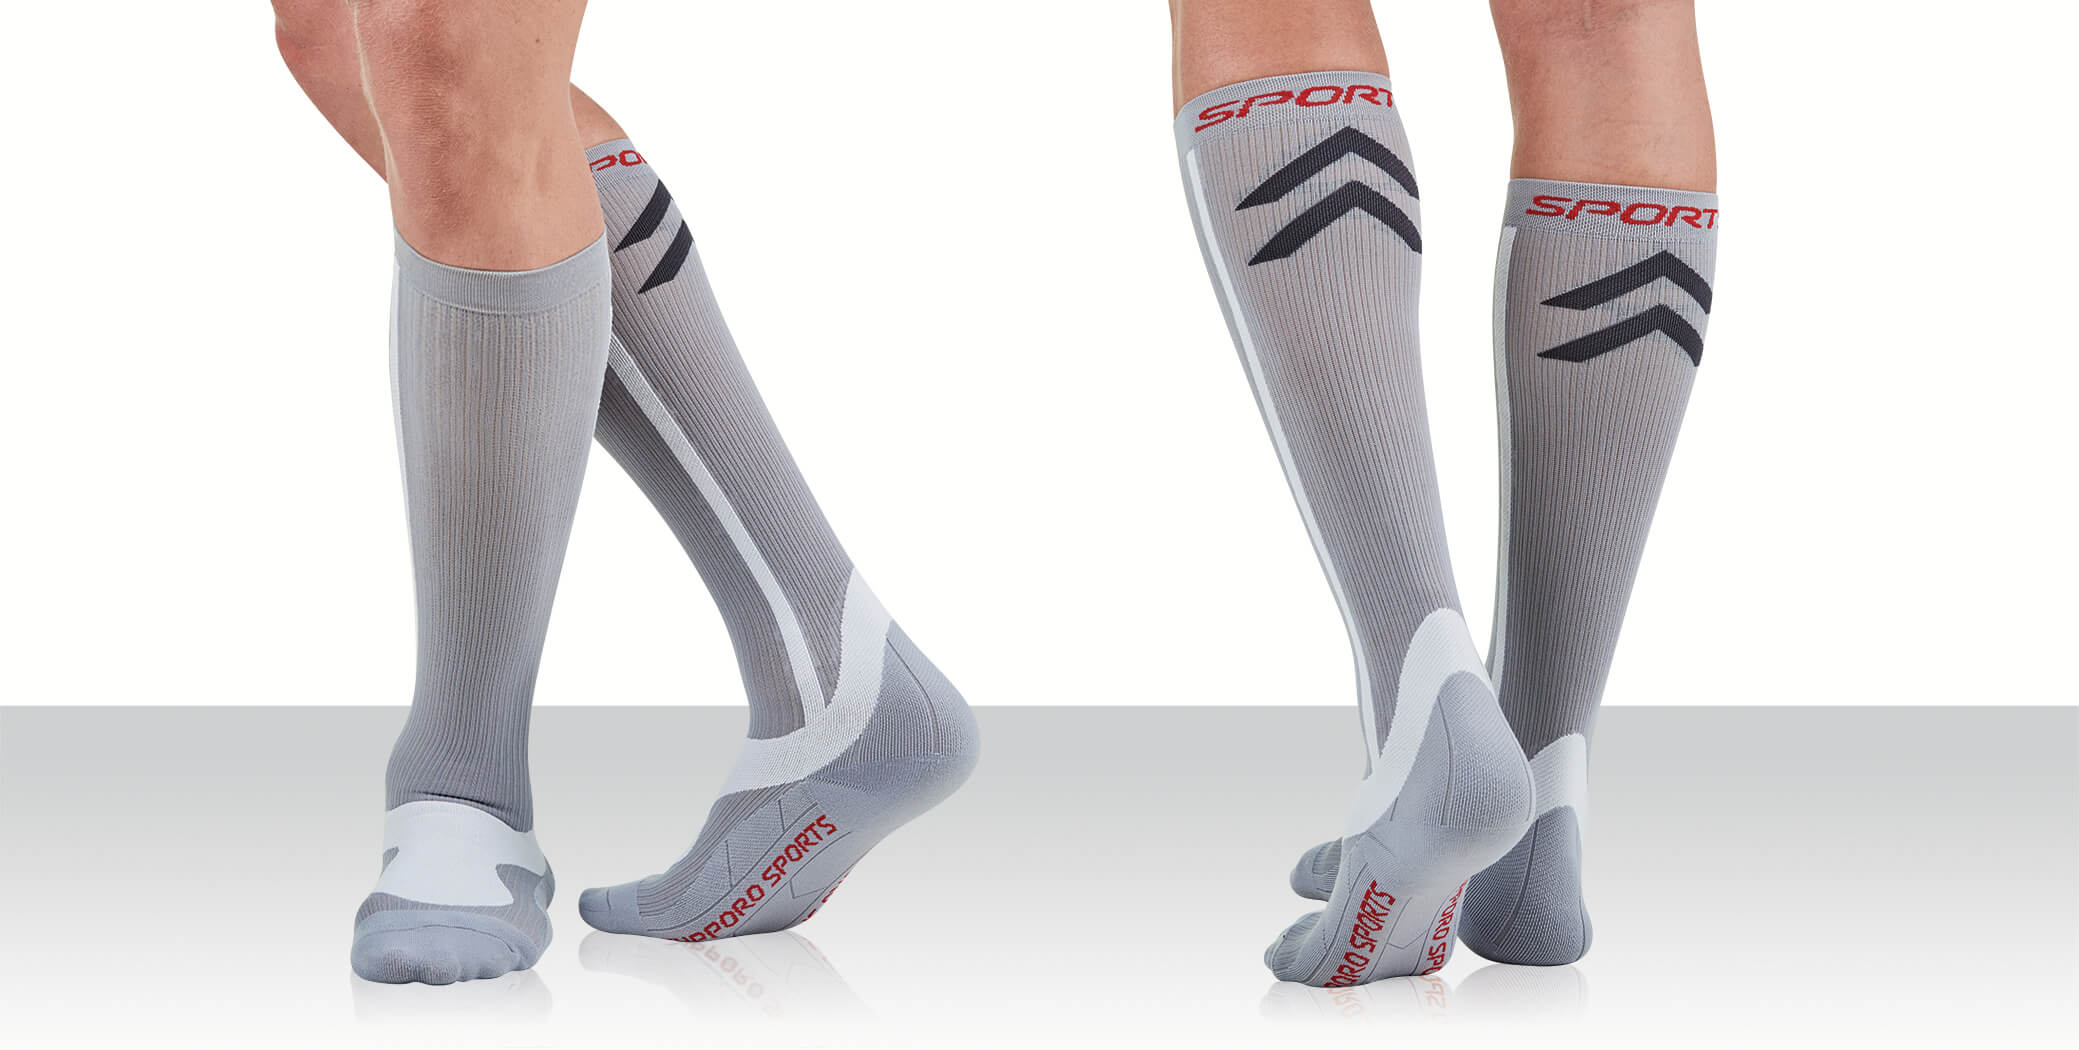 Supporo Unisex Compression Socks